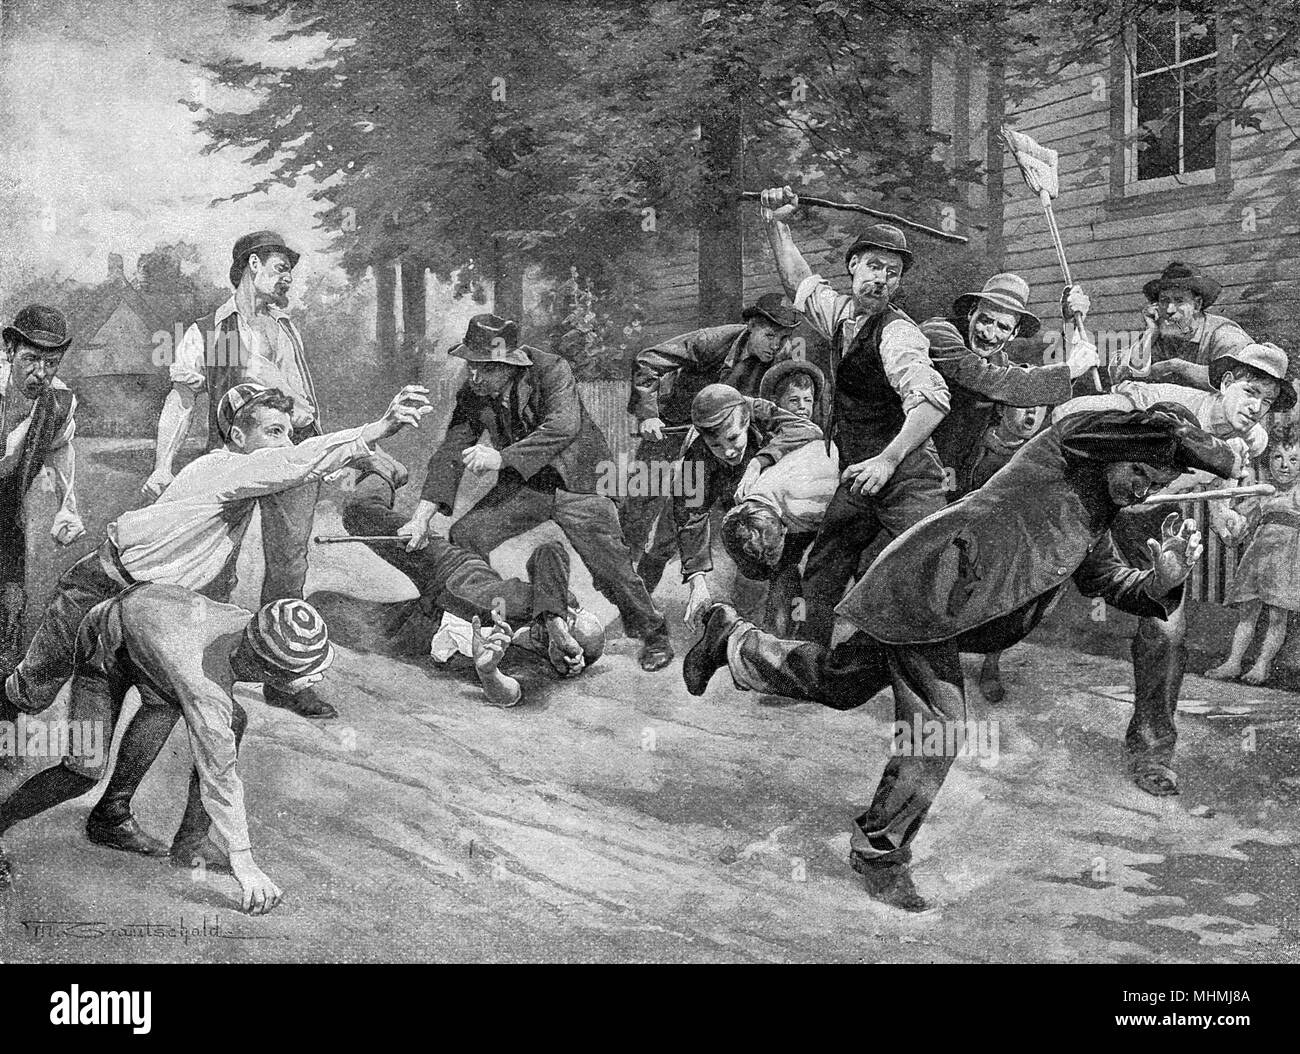 Un vagabundo sufre "una lección de madera", como él es expulsado de una ciudad estadounidense. Fecha: 1894 Foto de stock